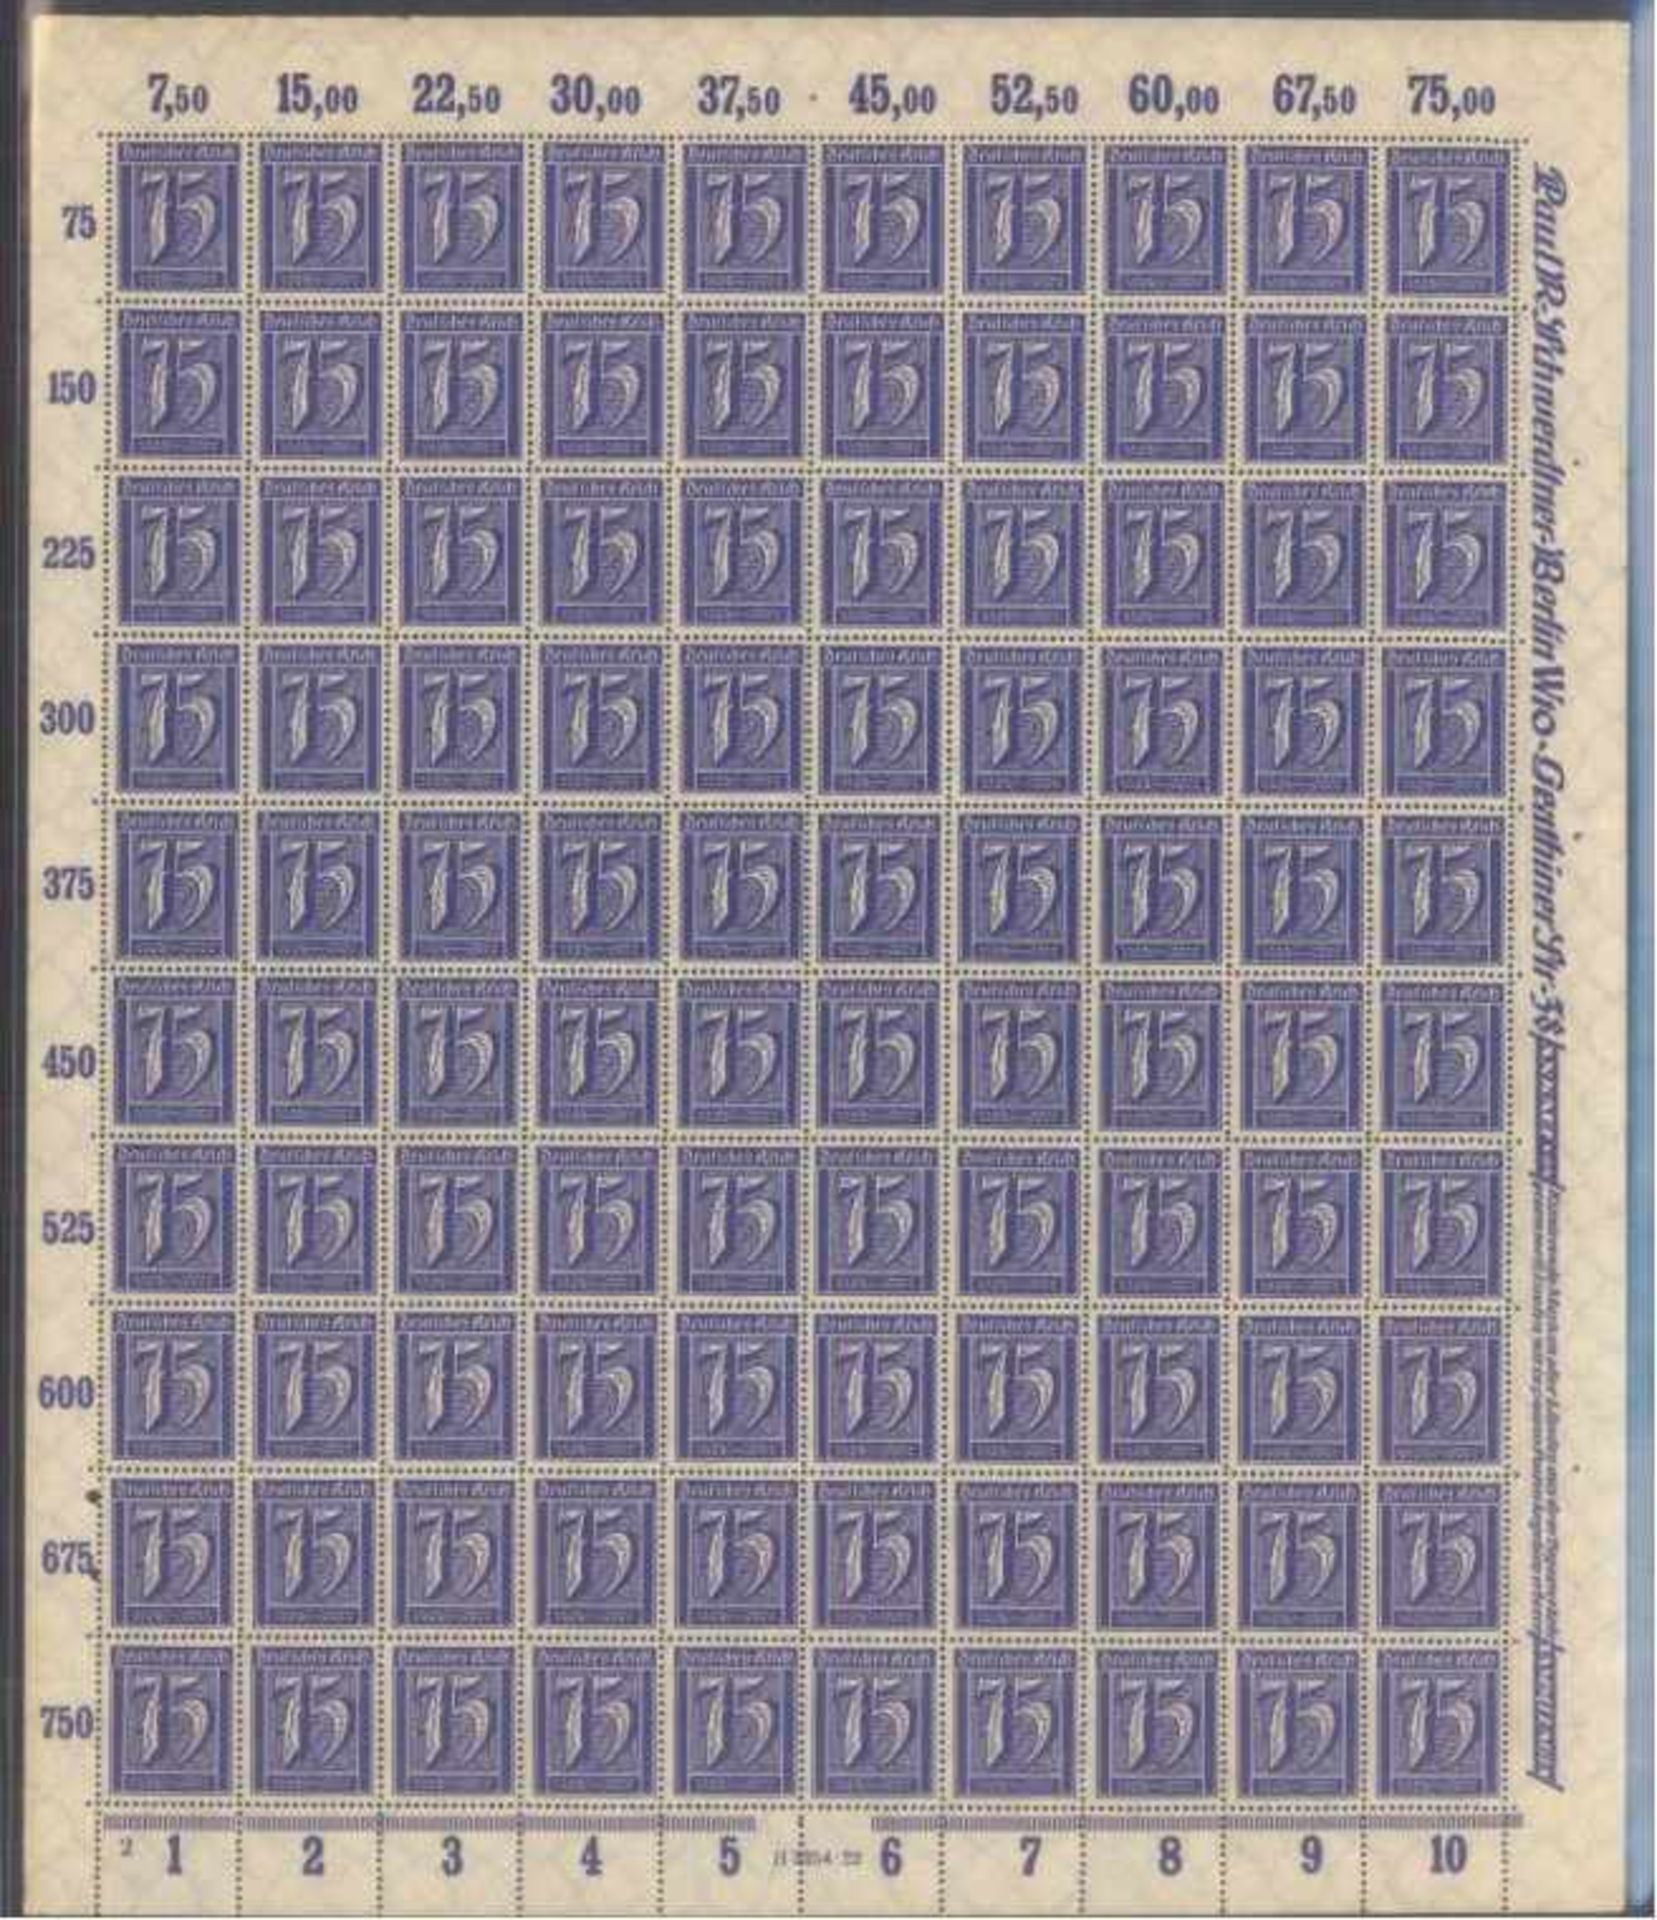 DEUTSCHES REICH INFLA 1921-1923, Bogensammlungpostfrische Sammlung von 24 kopmpletten Bogen.